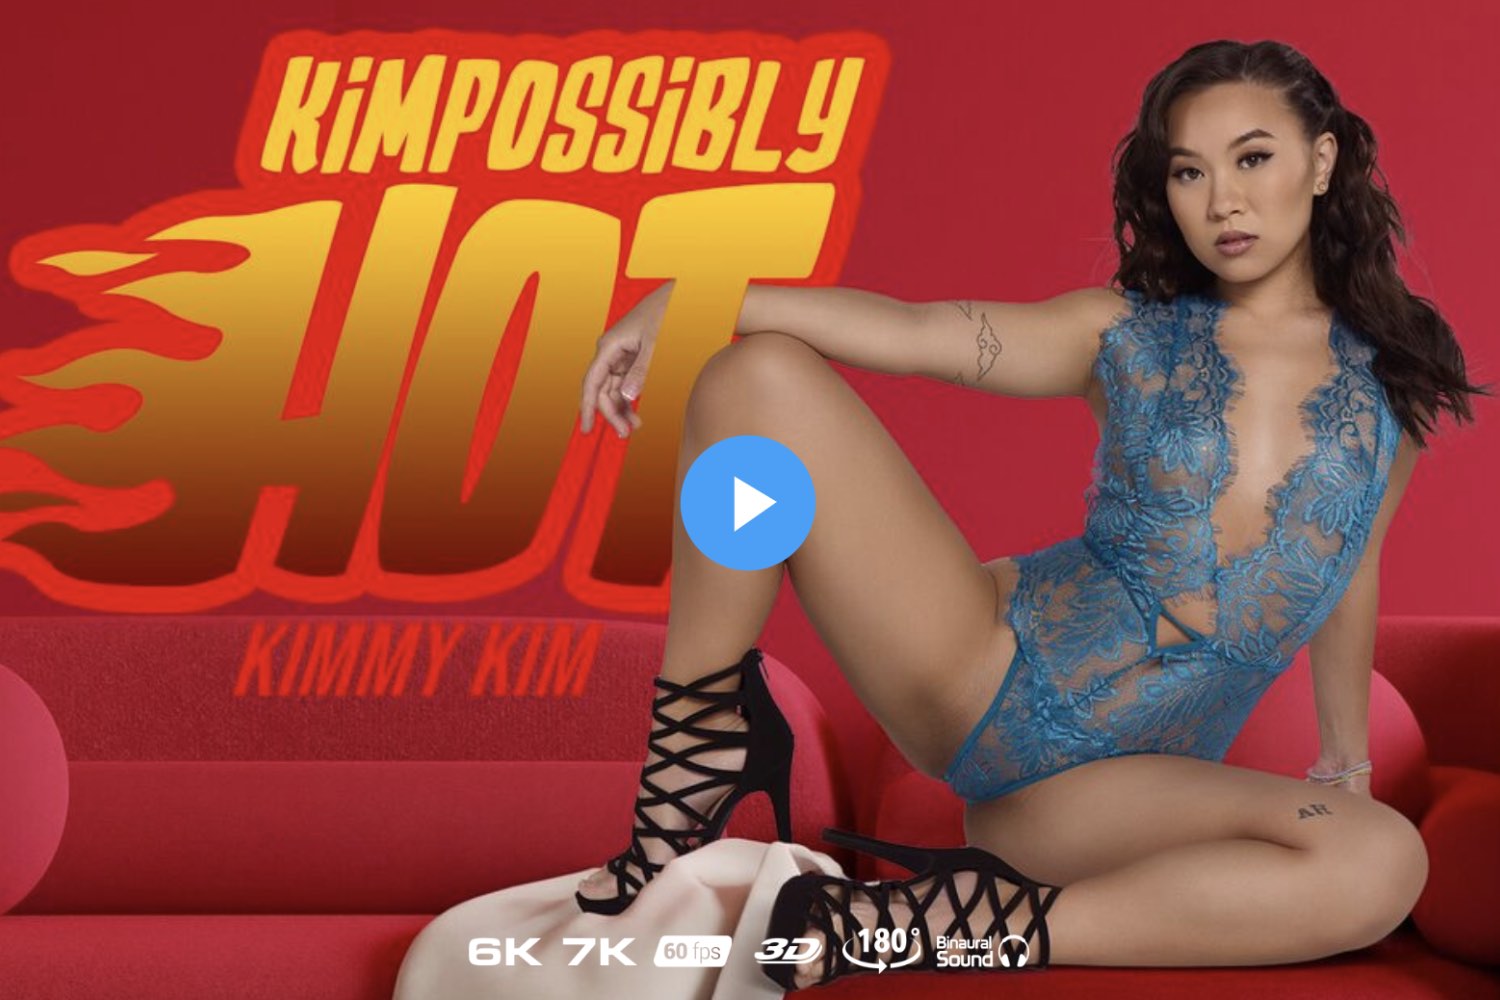 Kimpossibly Hot - Kimmy Kim VR Porn - Kimmy Kim Virtual Reality Porn